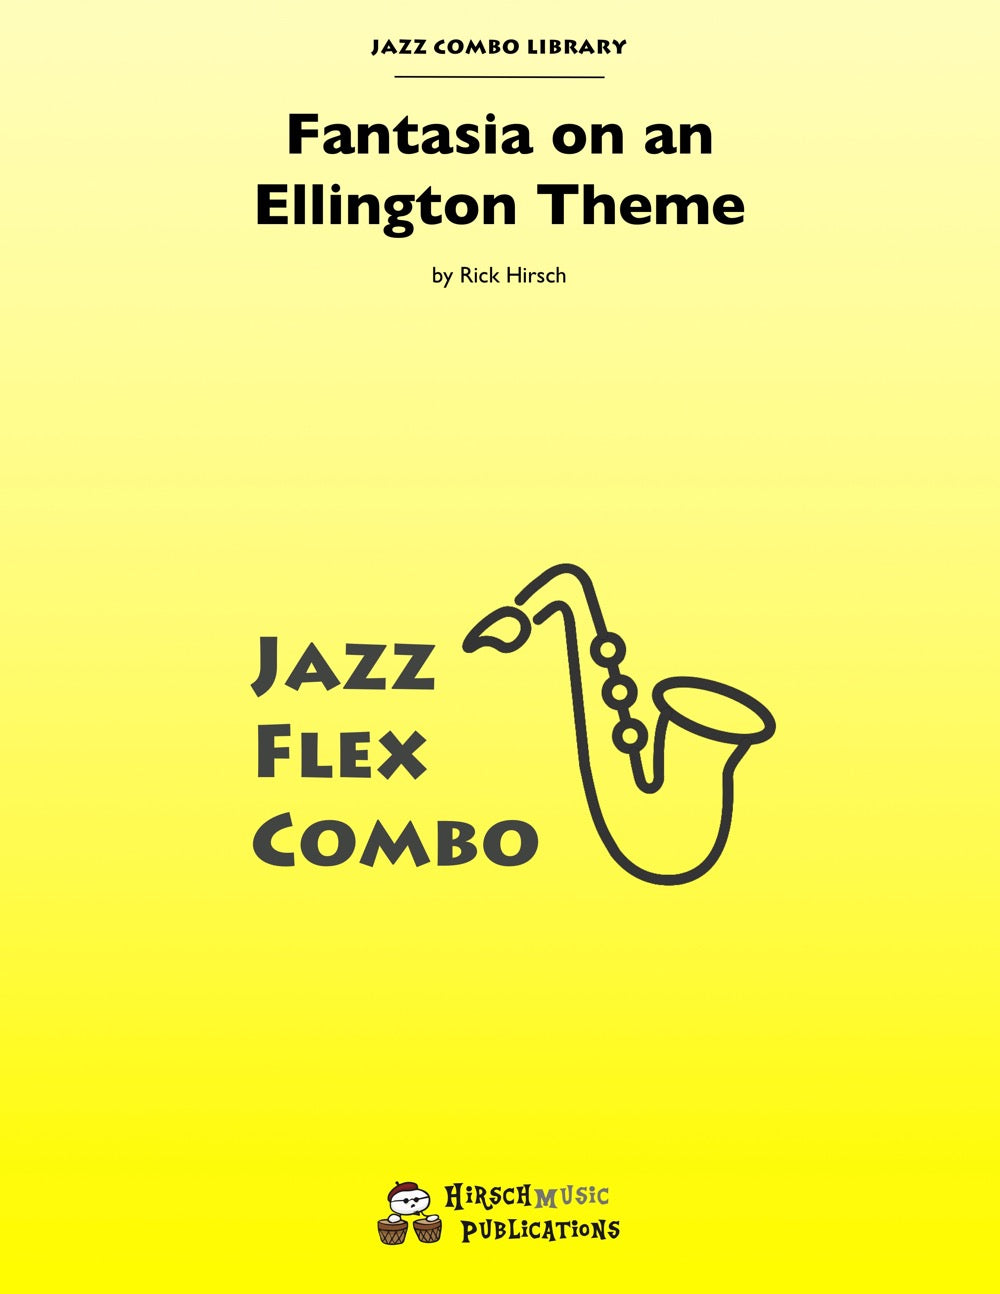 Fantasia on an Ellington Theme